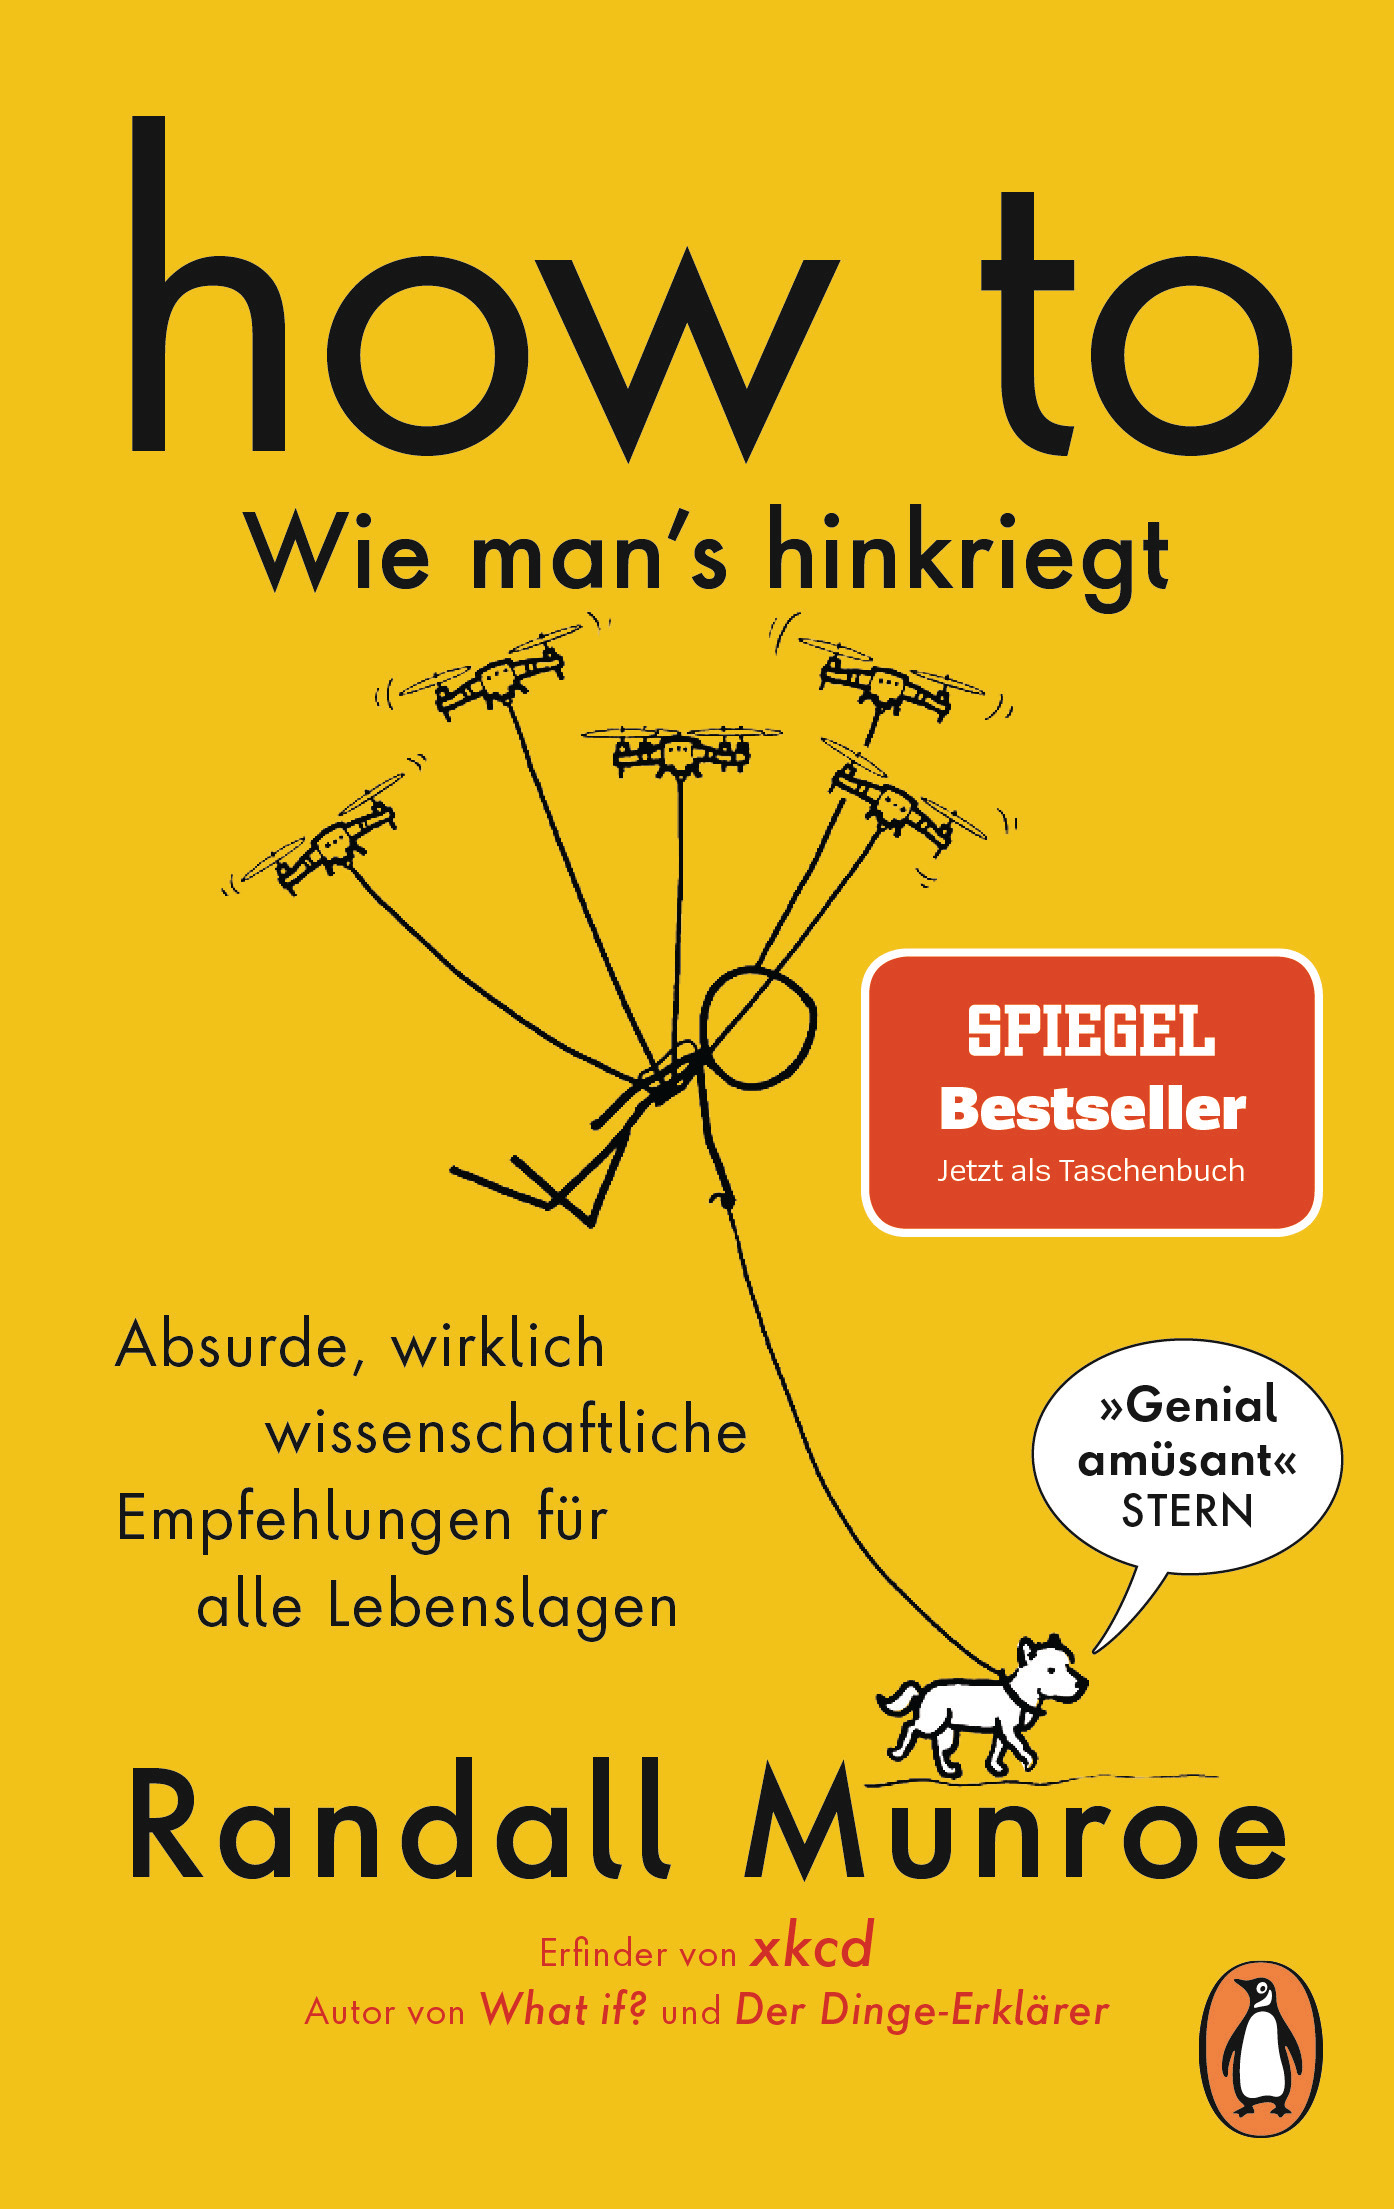 Randall Munroe; Ralf Pannowitsch; Benjamin Schilling / HOW TO - Wie man's hinkri - Bild 1 von 1